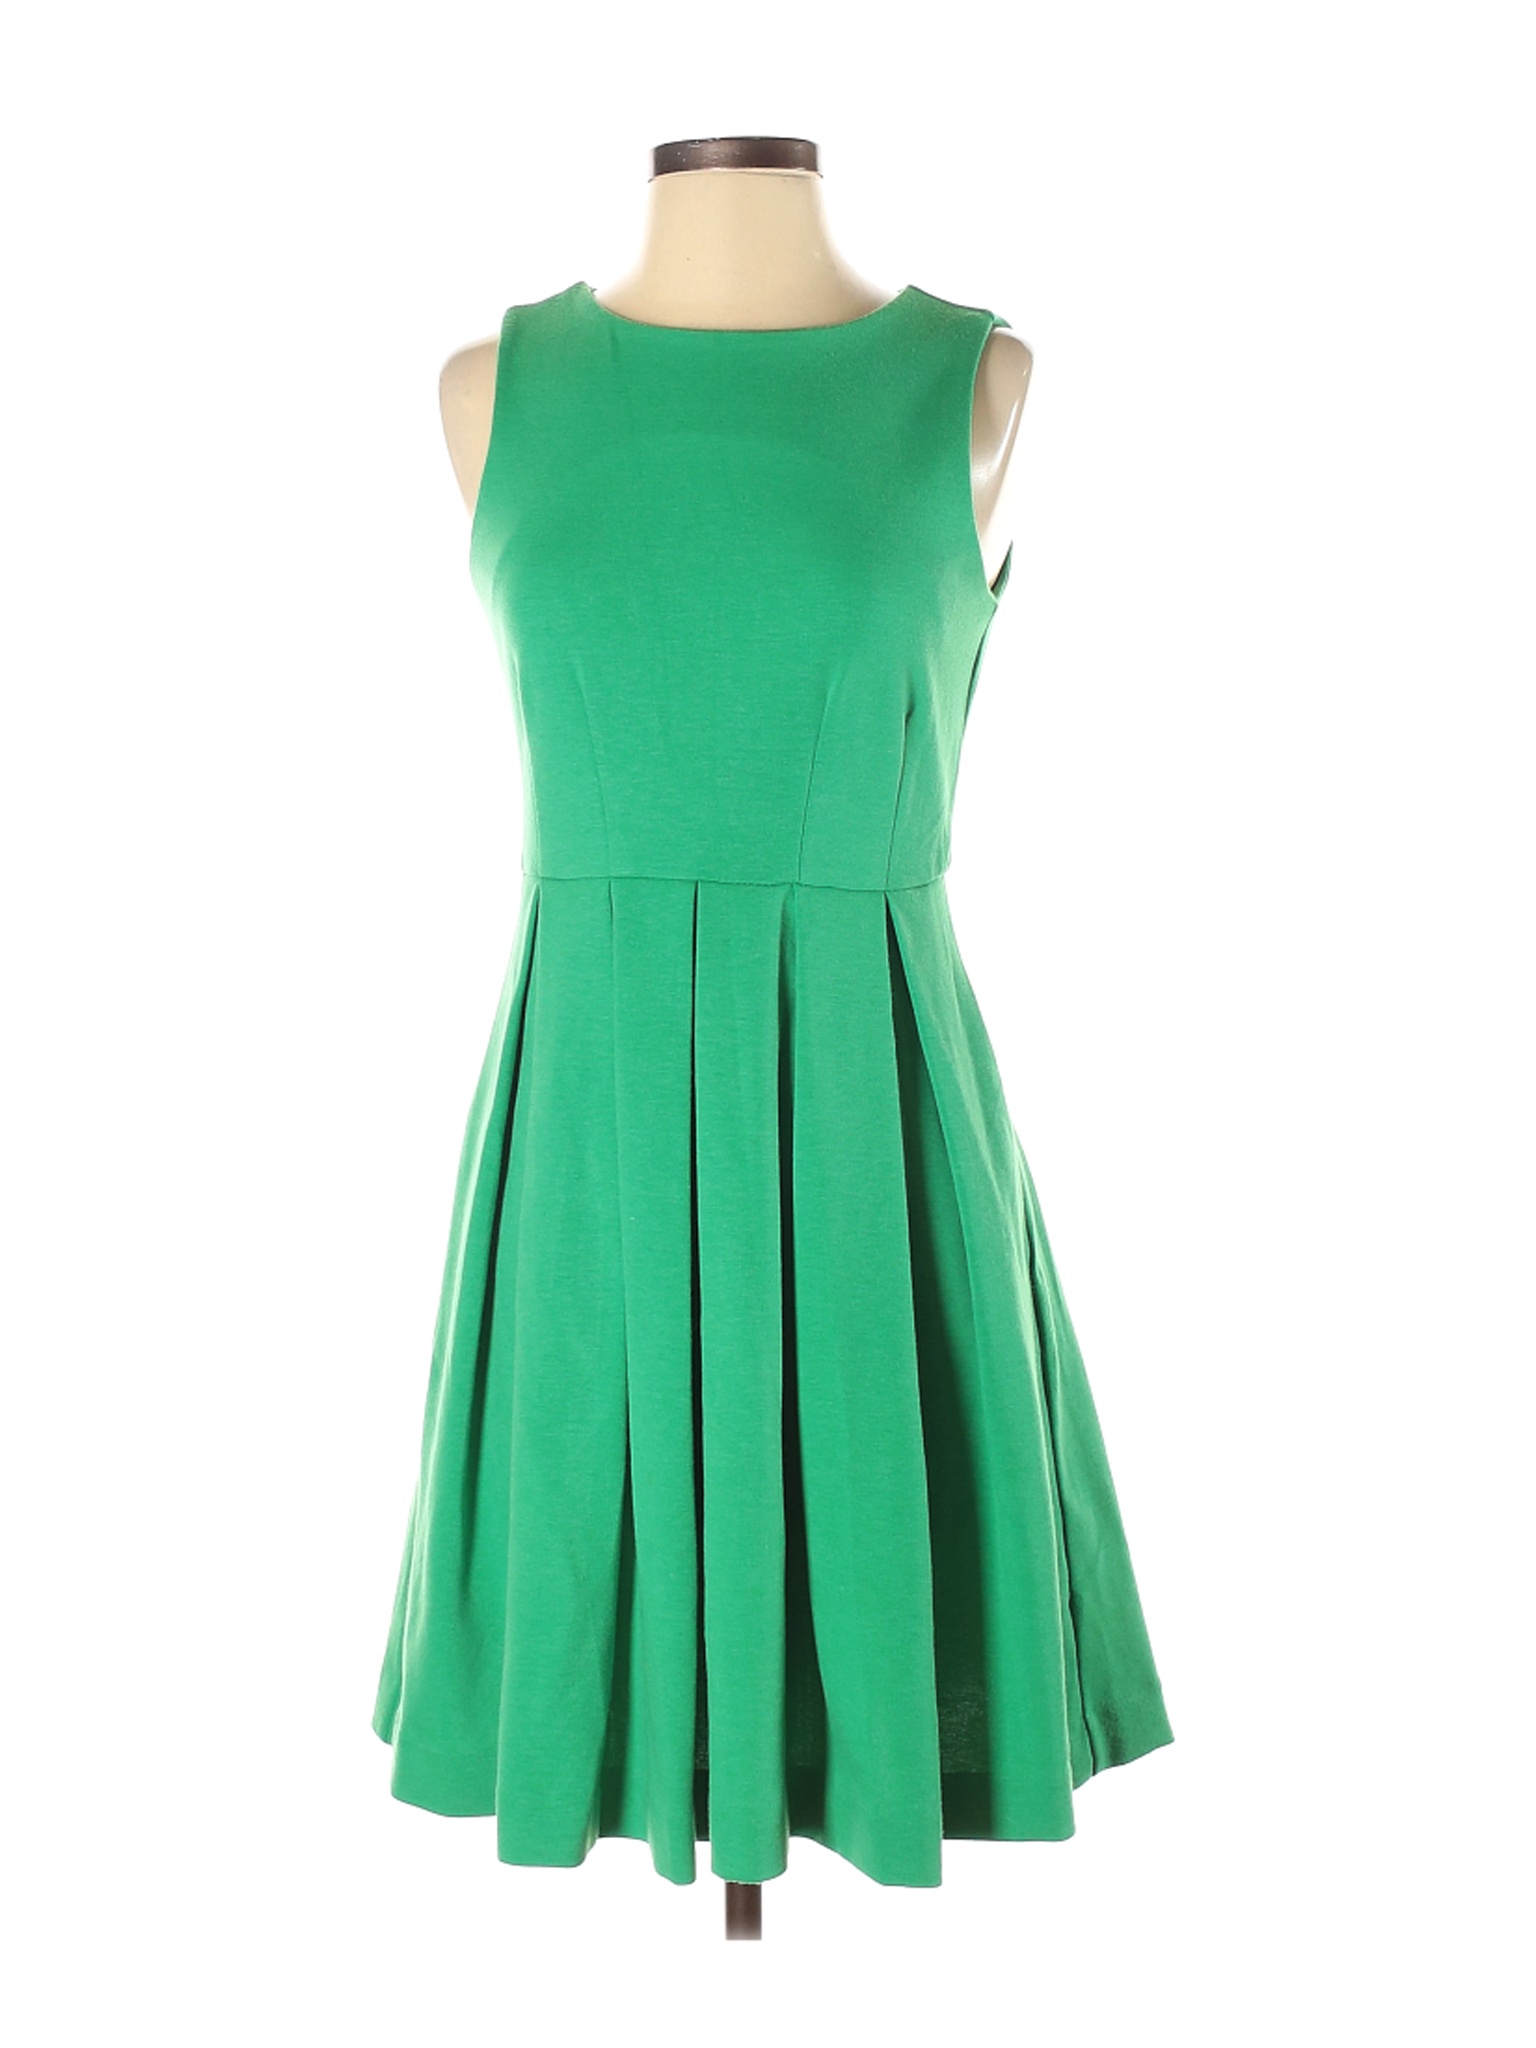 JLo by Jennifer Lopez Women Green Casual Dress 2 | eBay